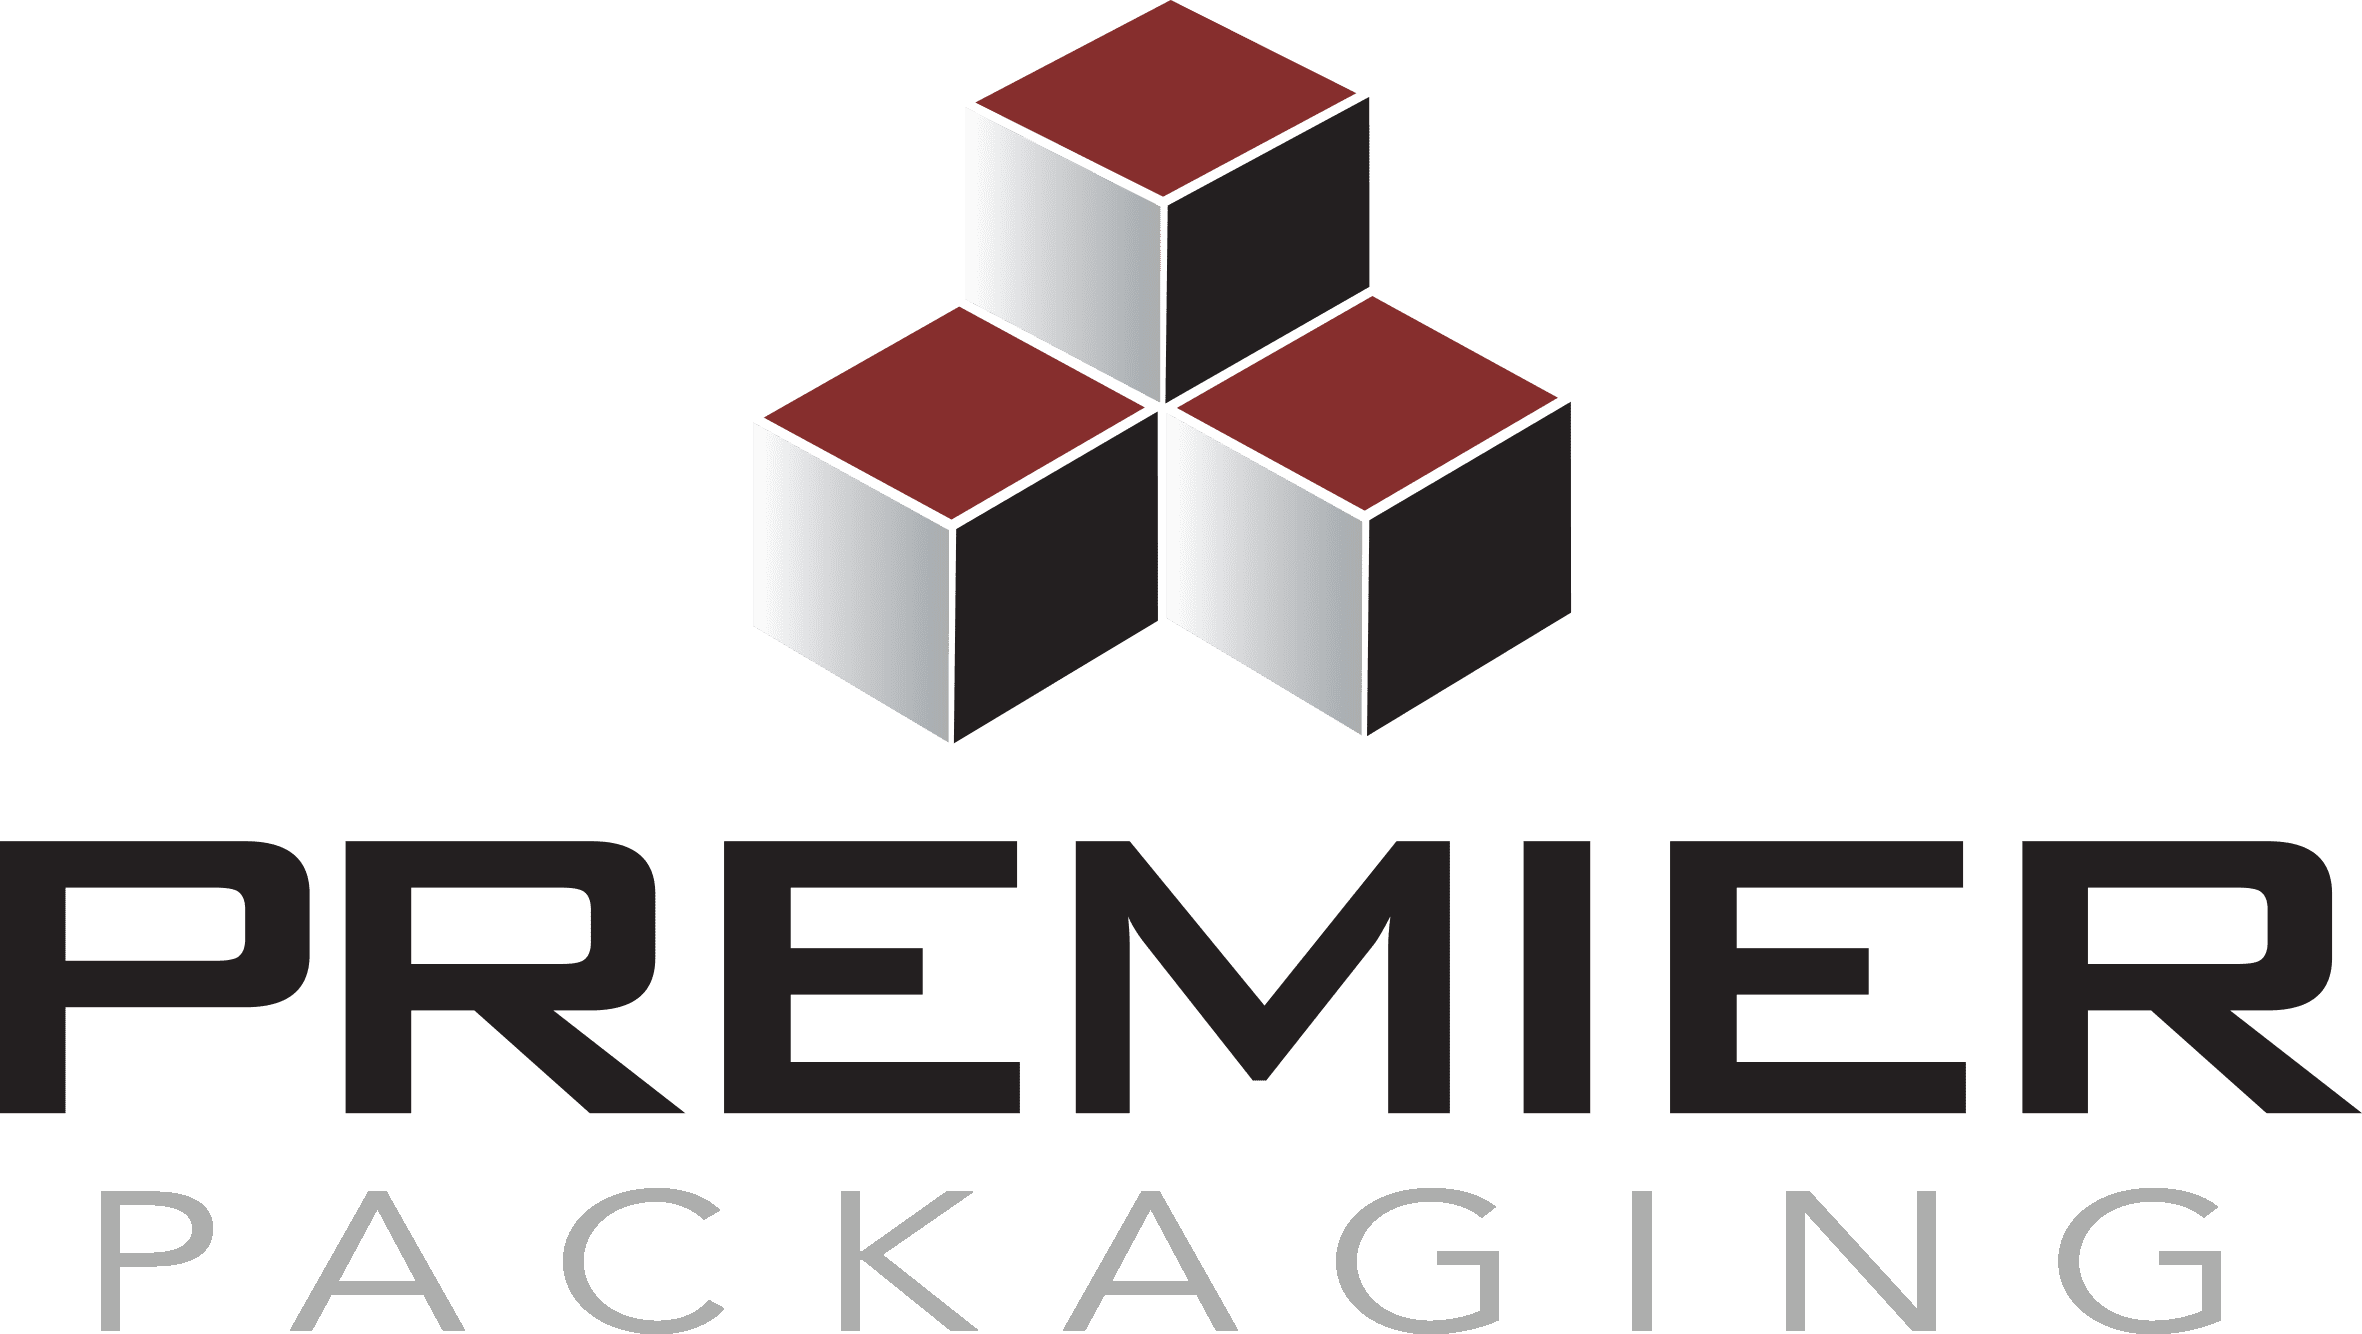 Premier Packaging Logo